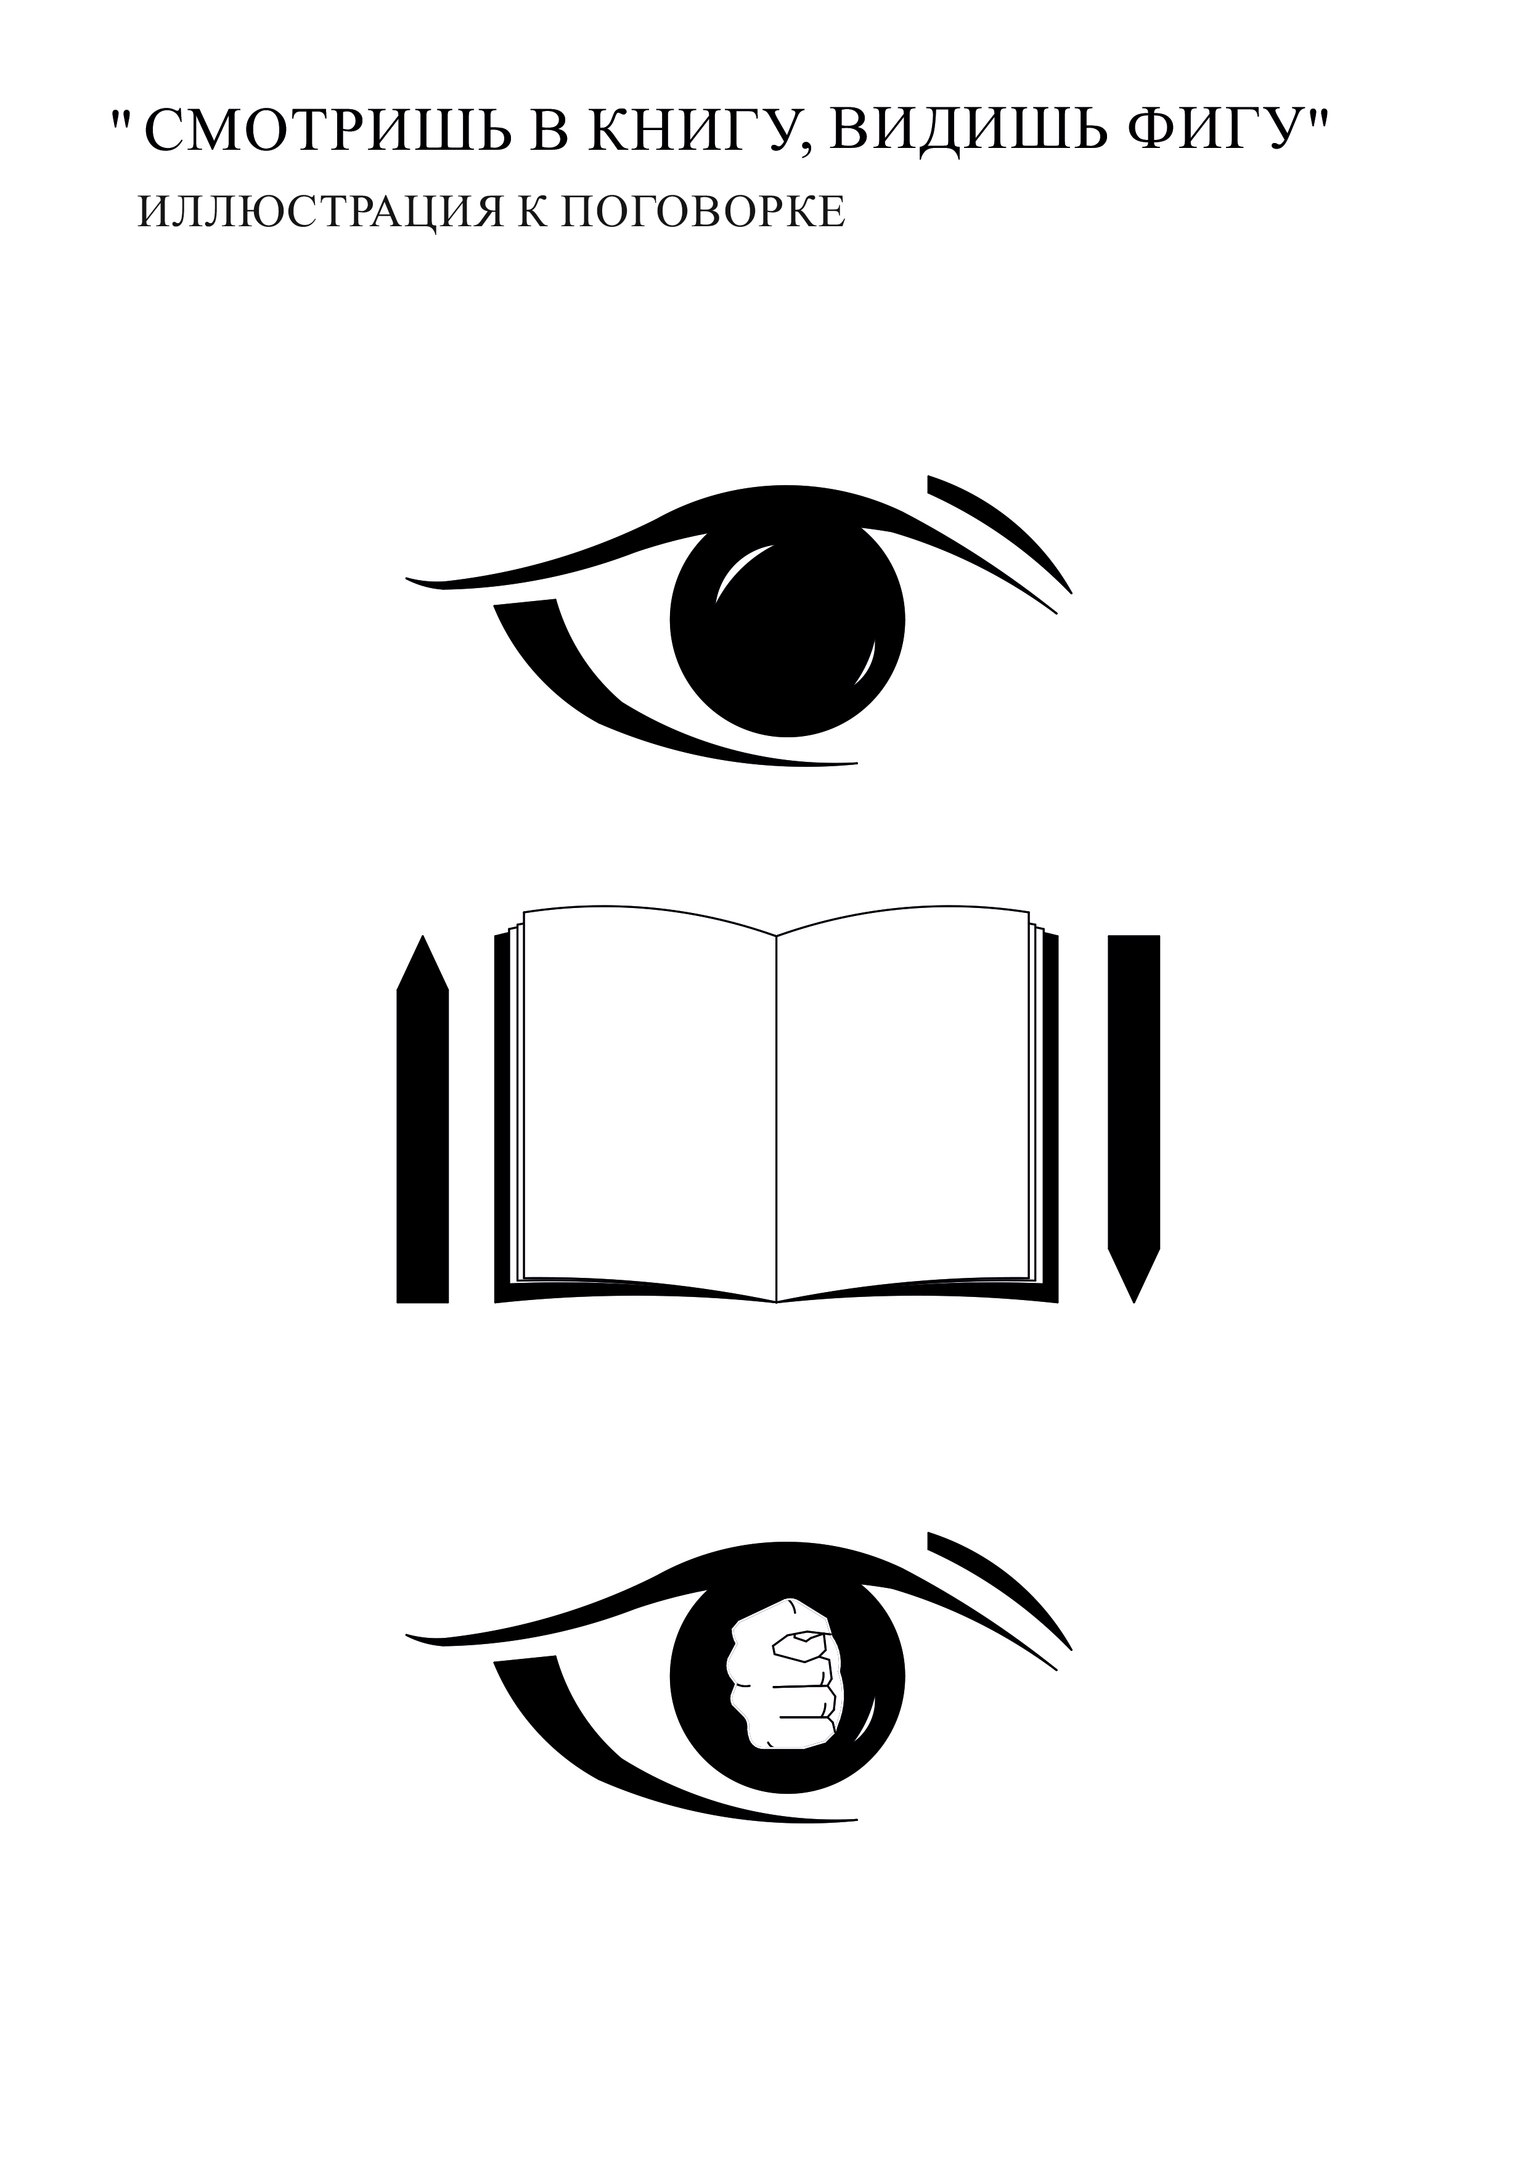 Книга видящий 6. Смотрю в книгу вижу. Смотрю в книгу вижу фигу. Смотрю в книгу вижу книгу. Смотришь в книгу видишь ы ГУ.